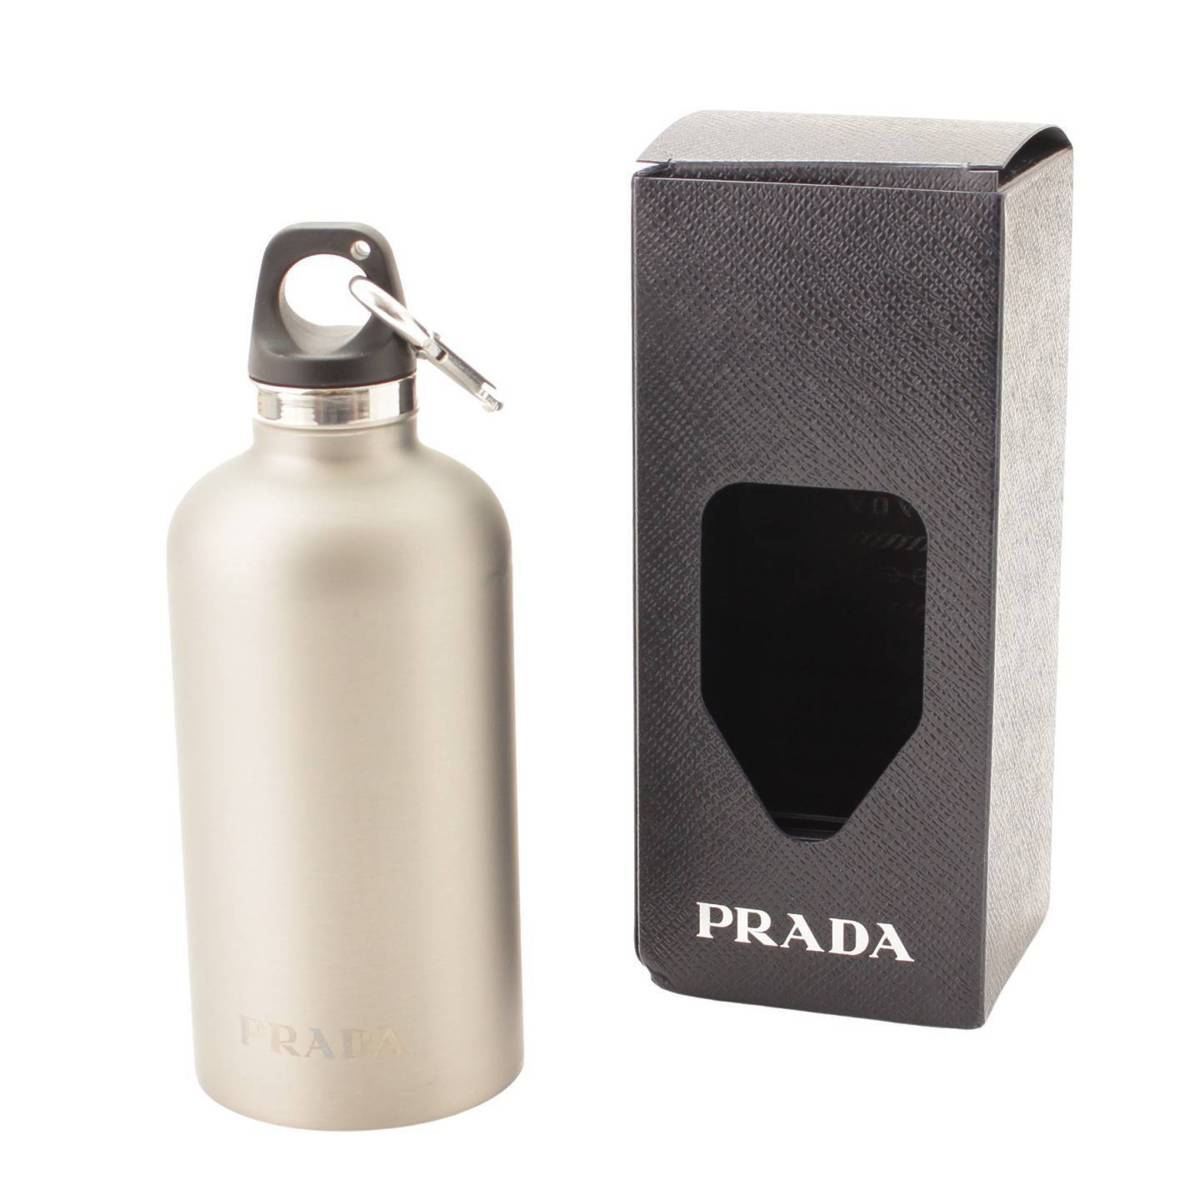 プラダ(Prada) ロゴ タンブラー マイボトル 水筒 350ml ステンレス 2UH002 シルバー